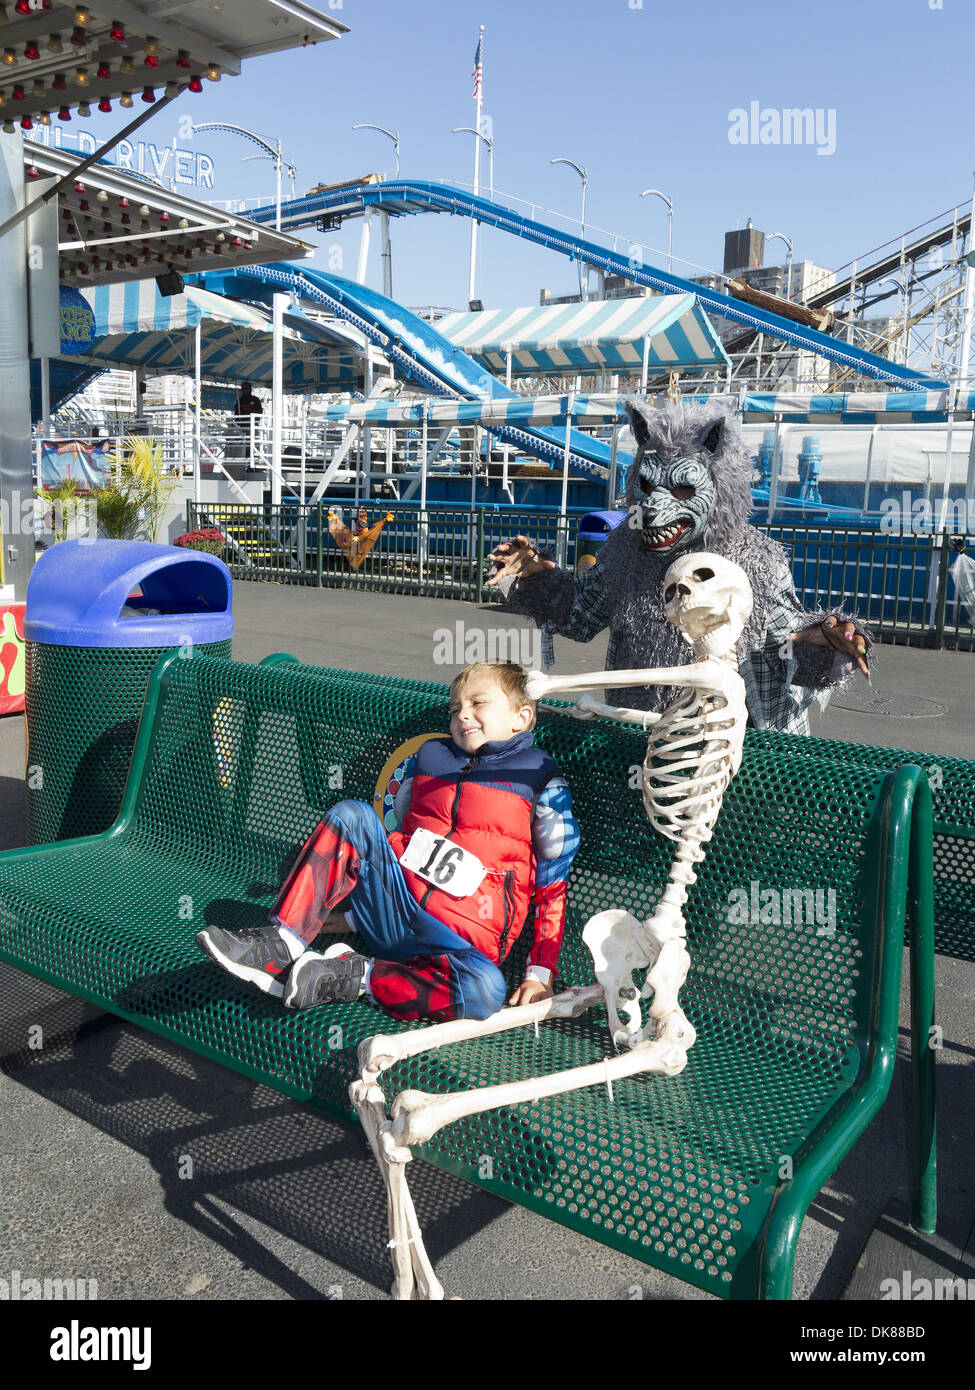 Junge, ängstliche junge im Luna Park nach der jährlichen Coney Island Halloween Kinder Parade in Brooklyn, NY, 2013. Stockfoto